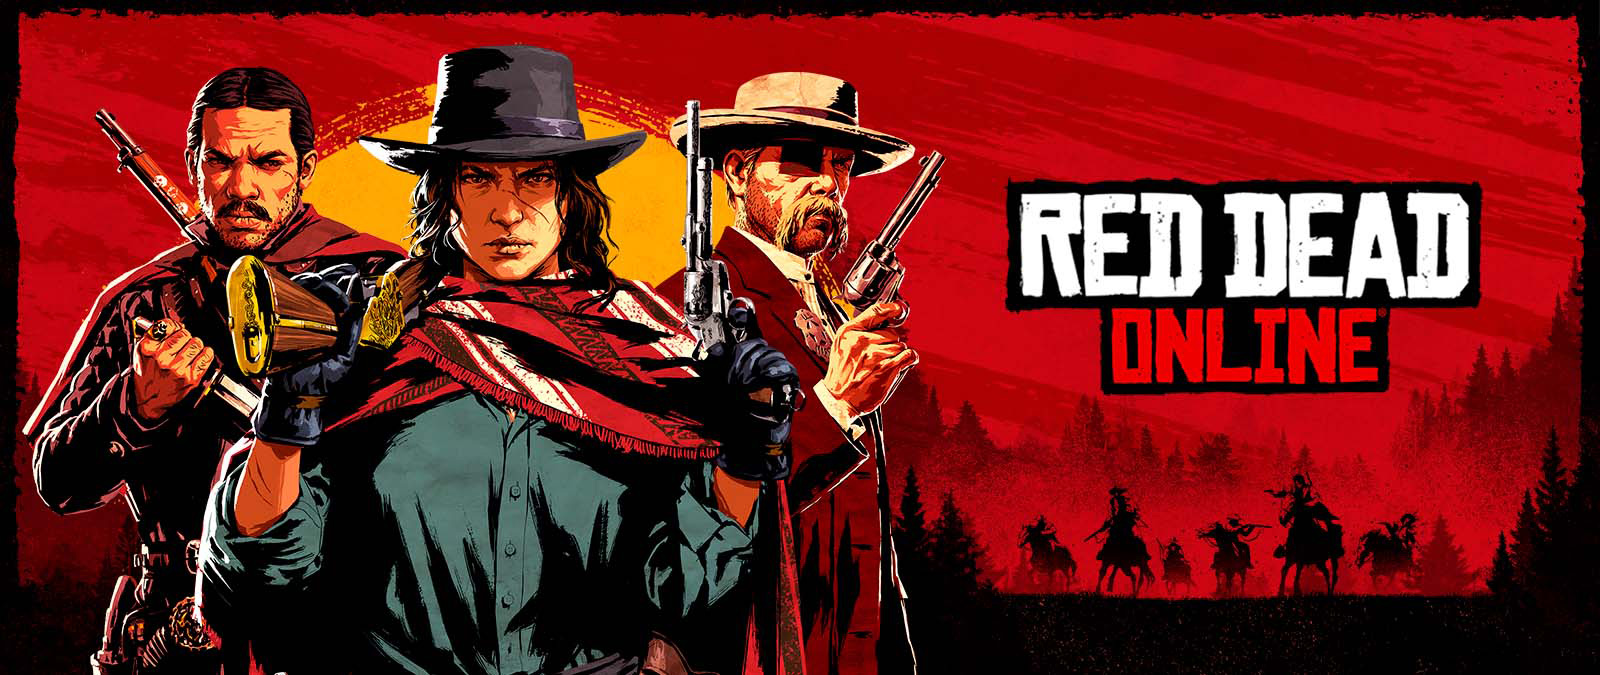 Red Dead Online. Drei Personen mit Waffen vor einem Sonnenuntergang und Schatten von anderen Personen auf Pferden.